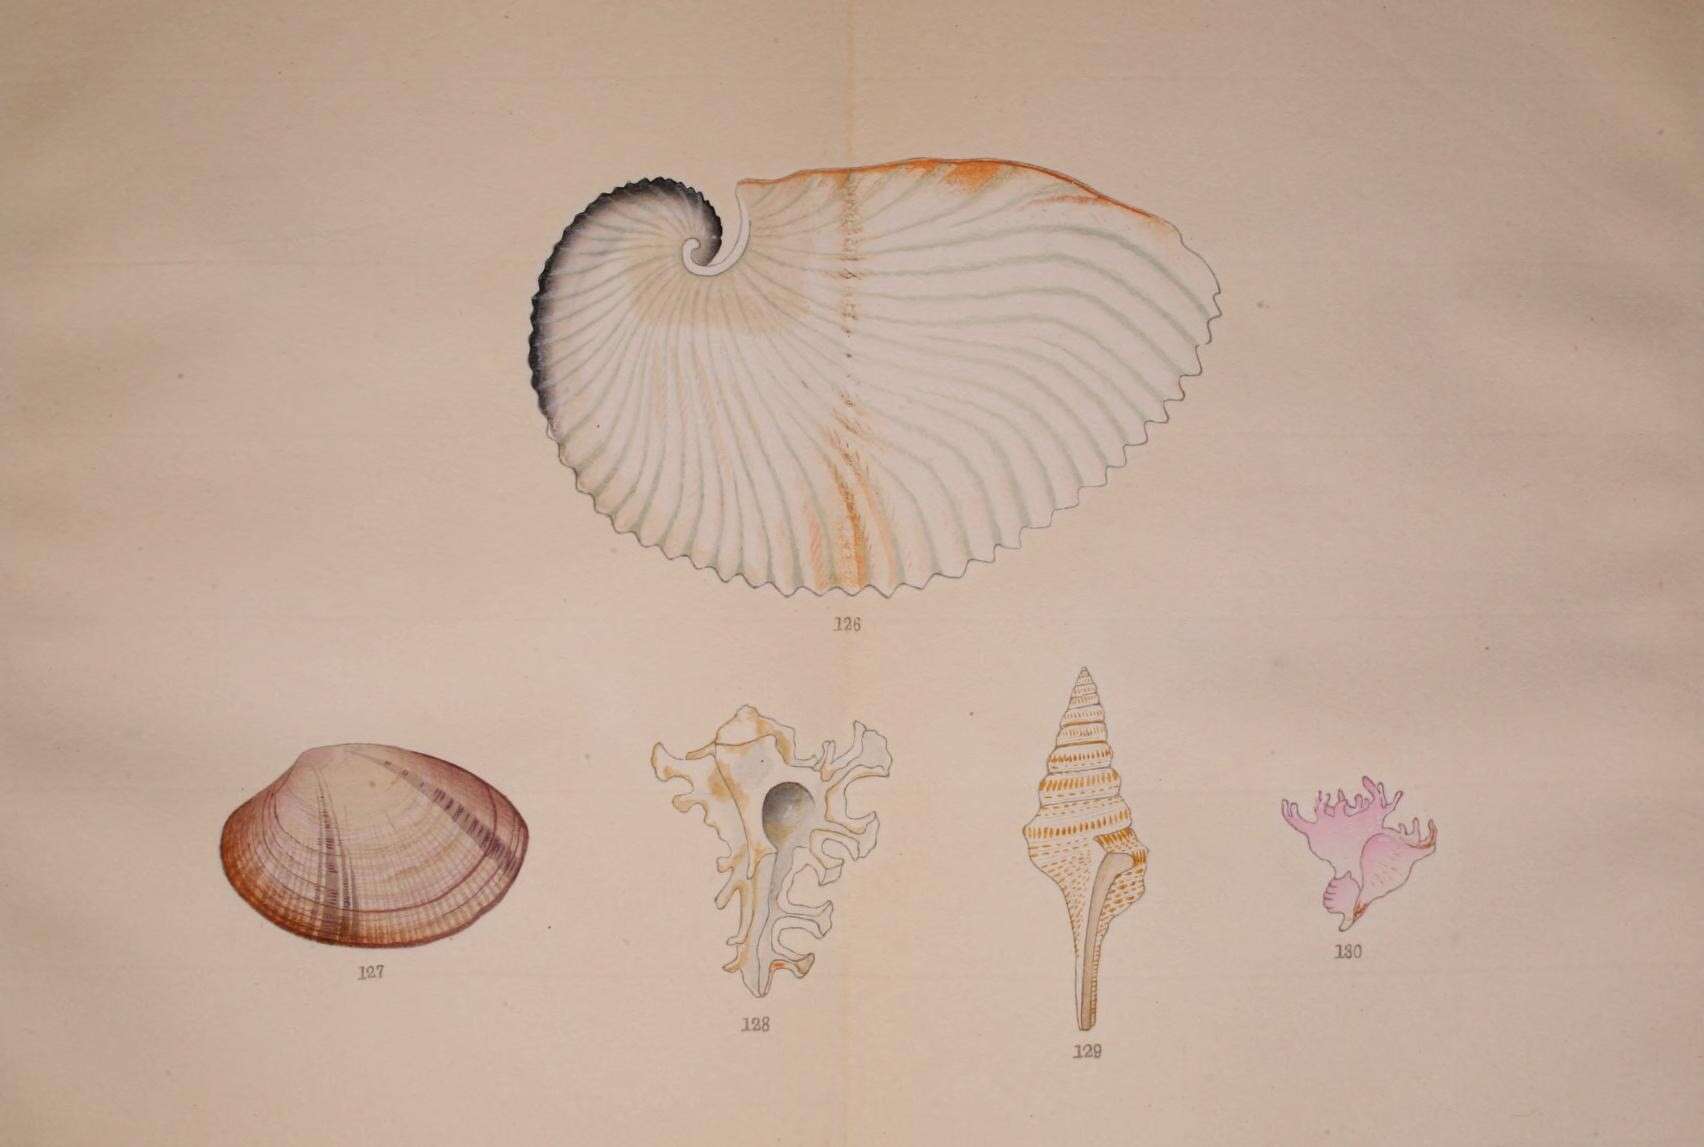 Image of argonauts and paper nautiluses